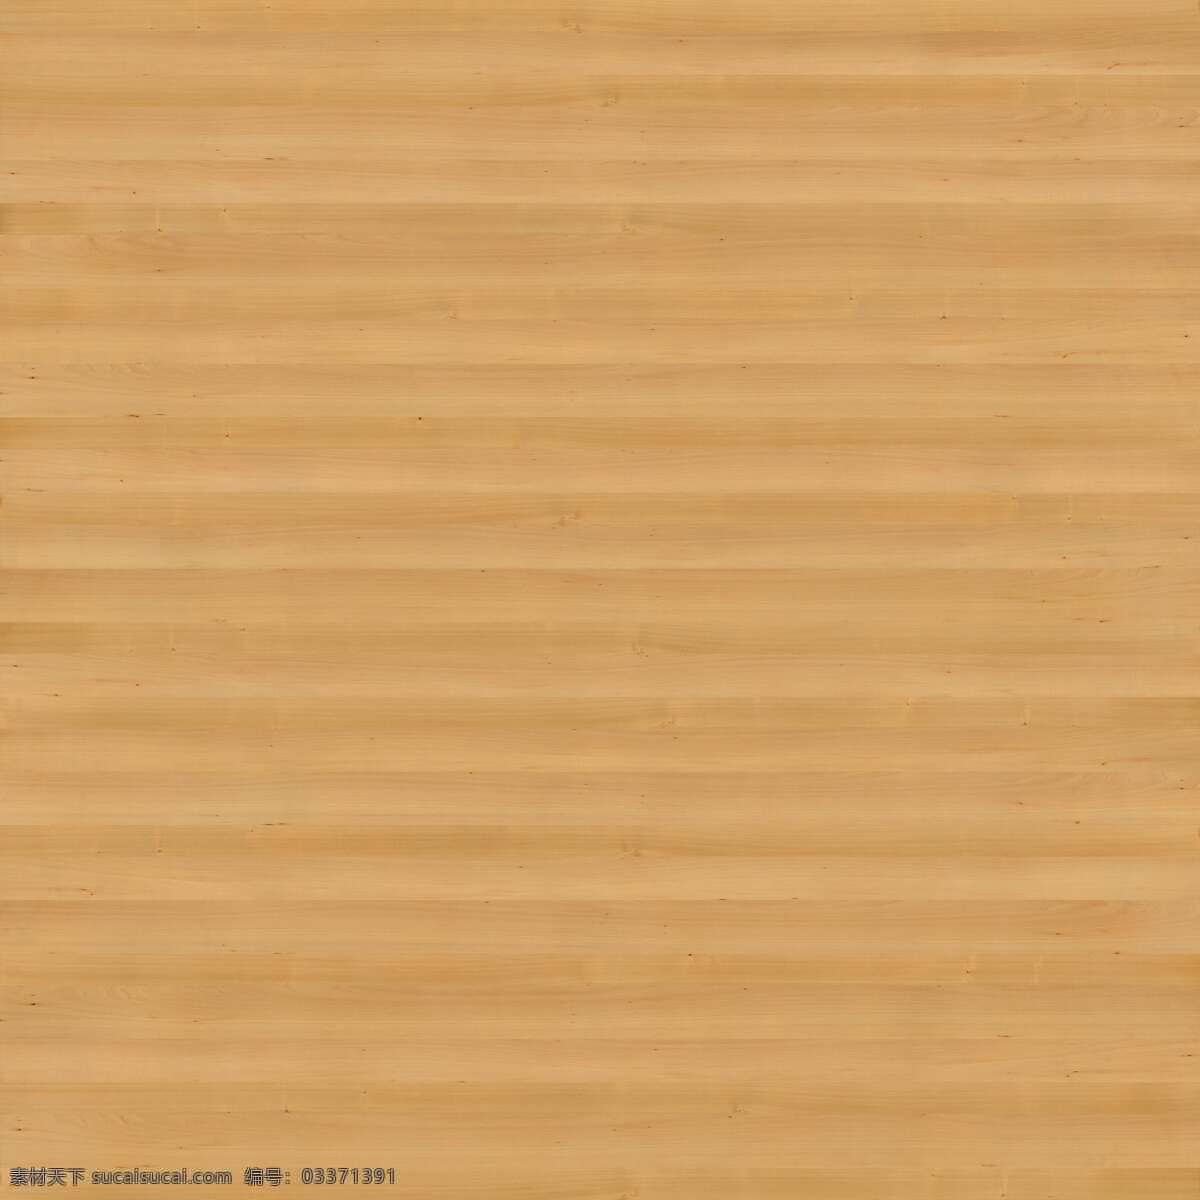 樱桃木木纹 木材 家居地板 木纹理 木地板 橙色